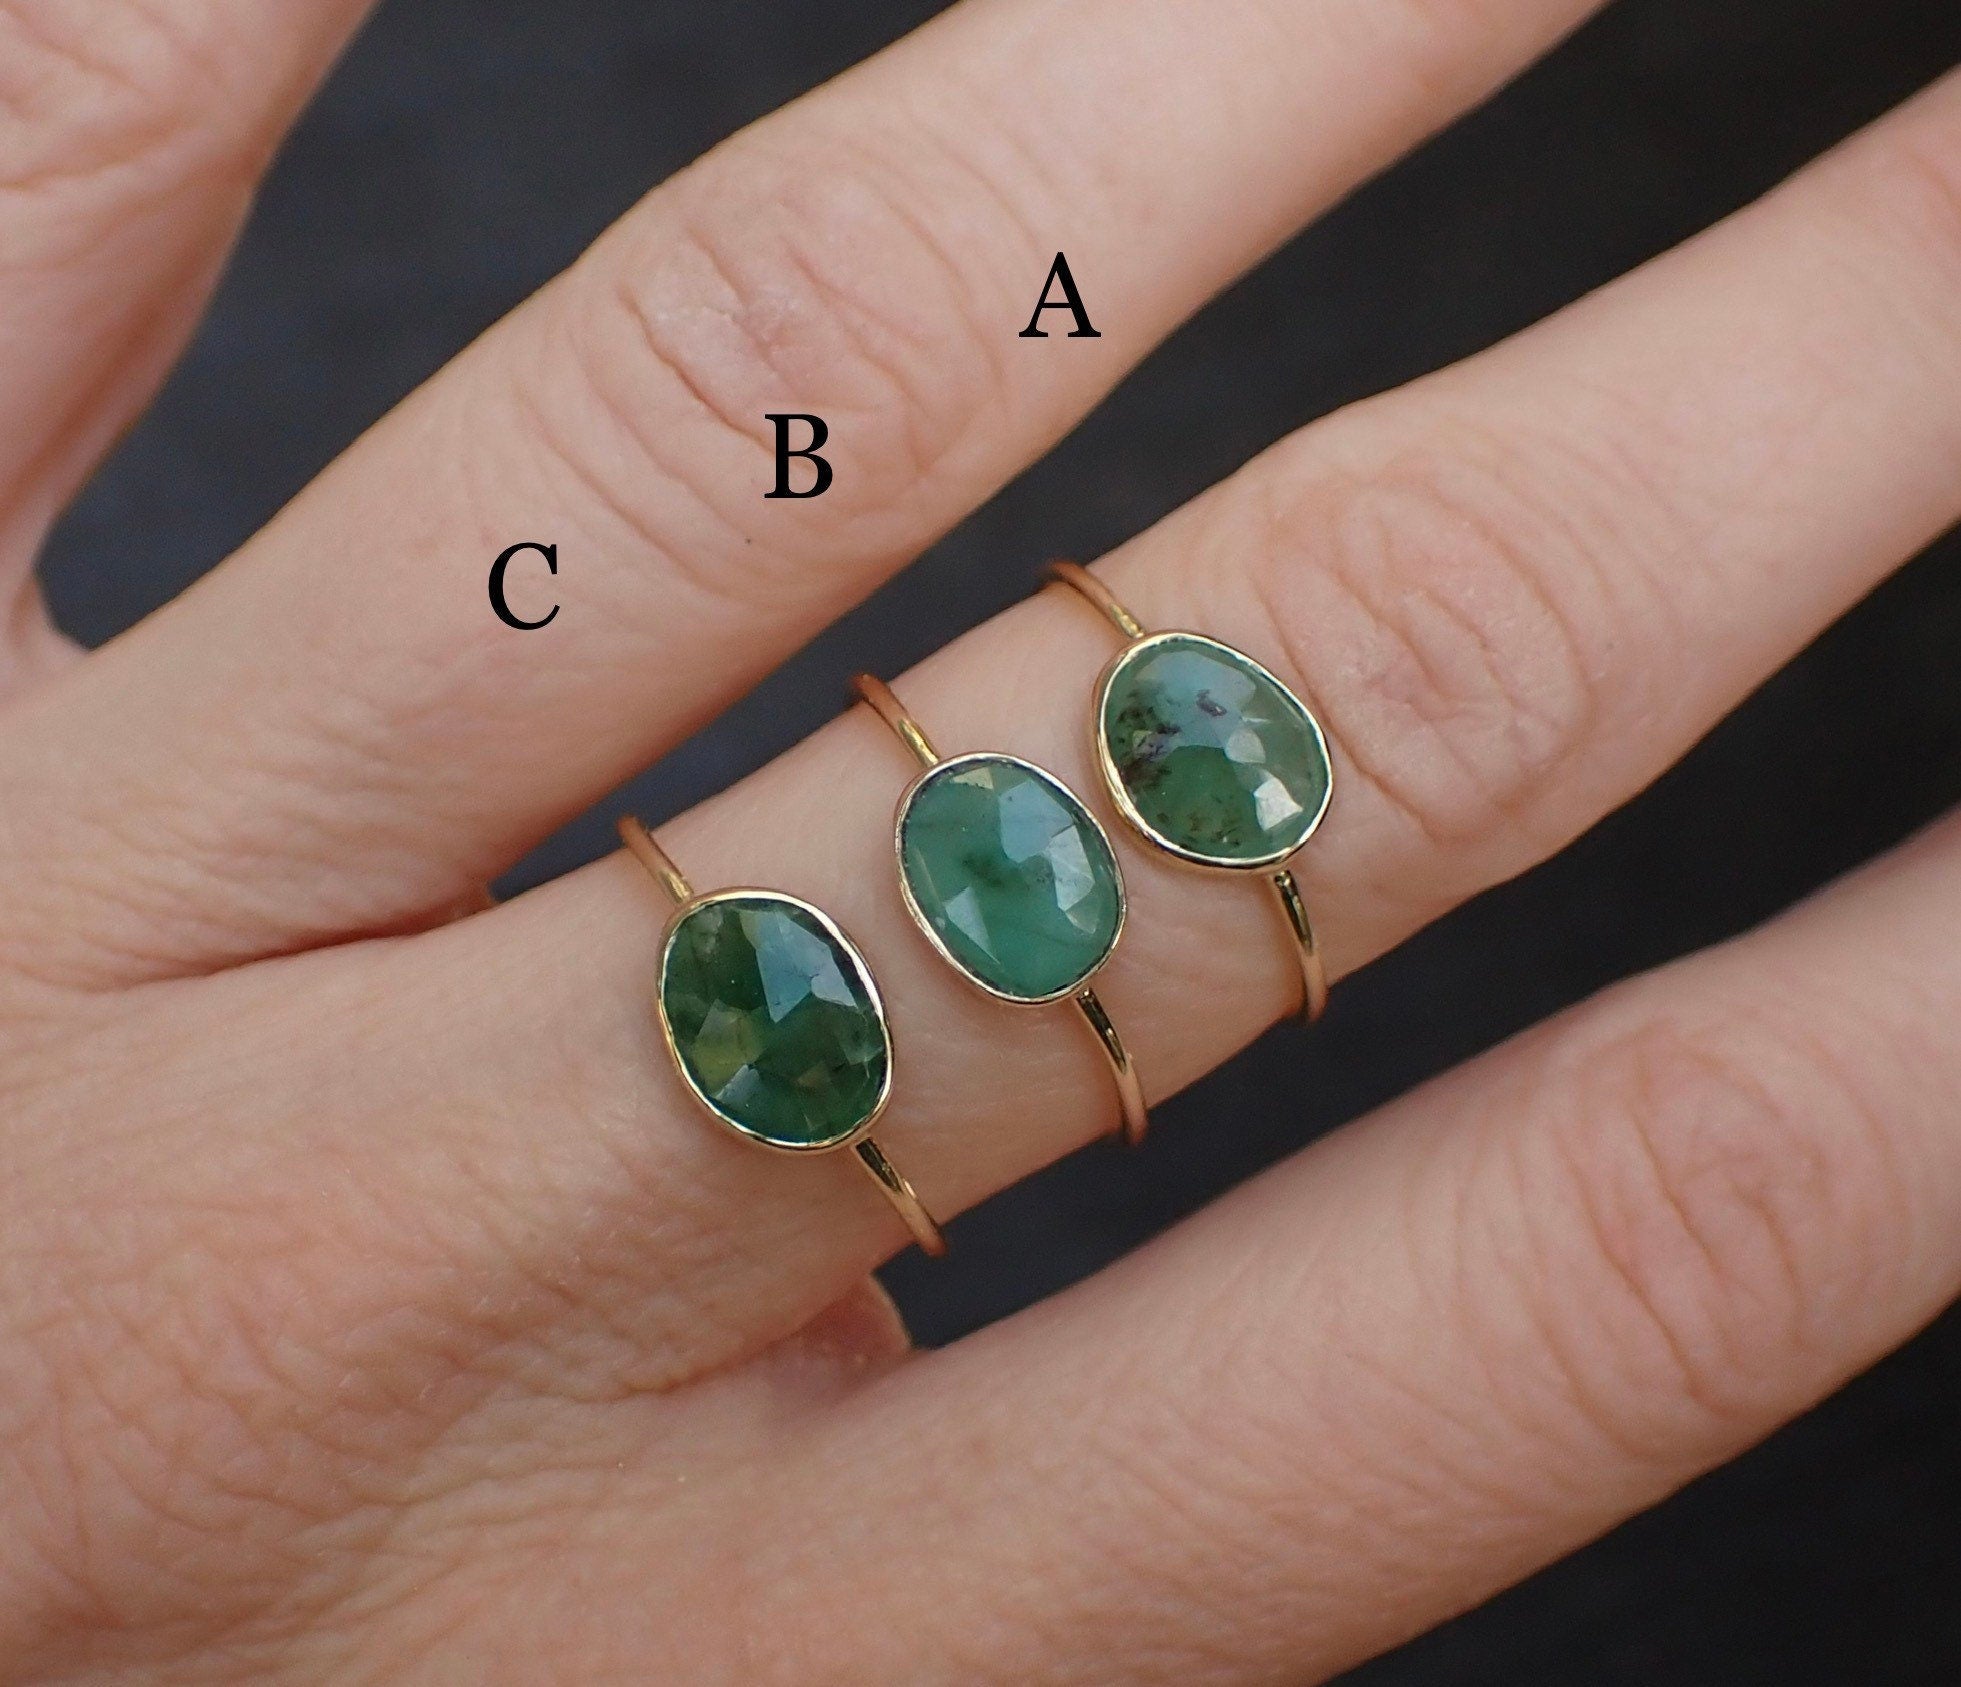 Wide Band Asscher Cut Emerald Ring | LUO